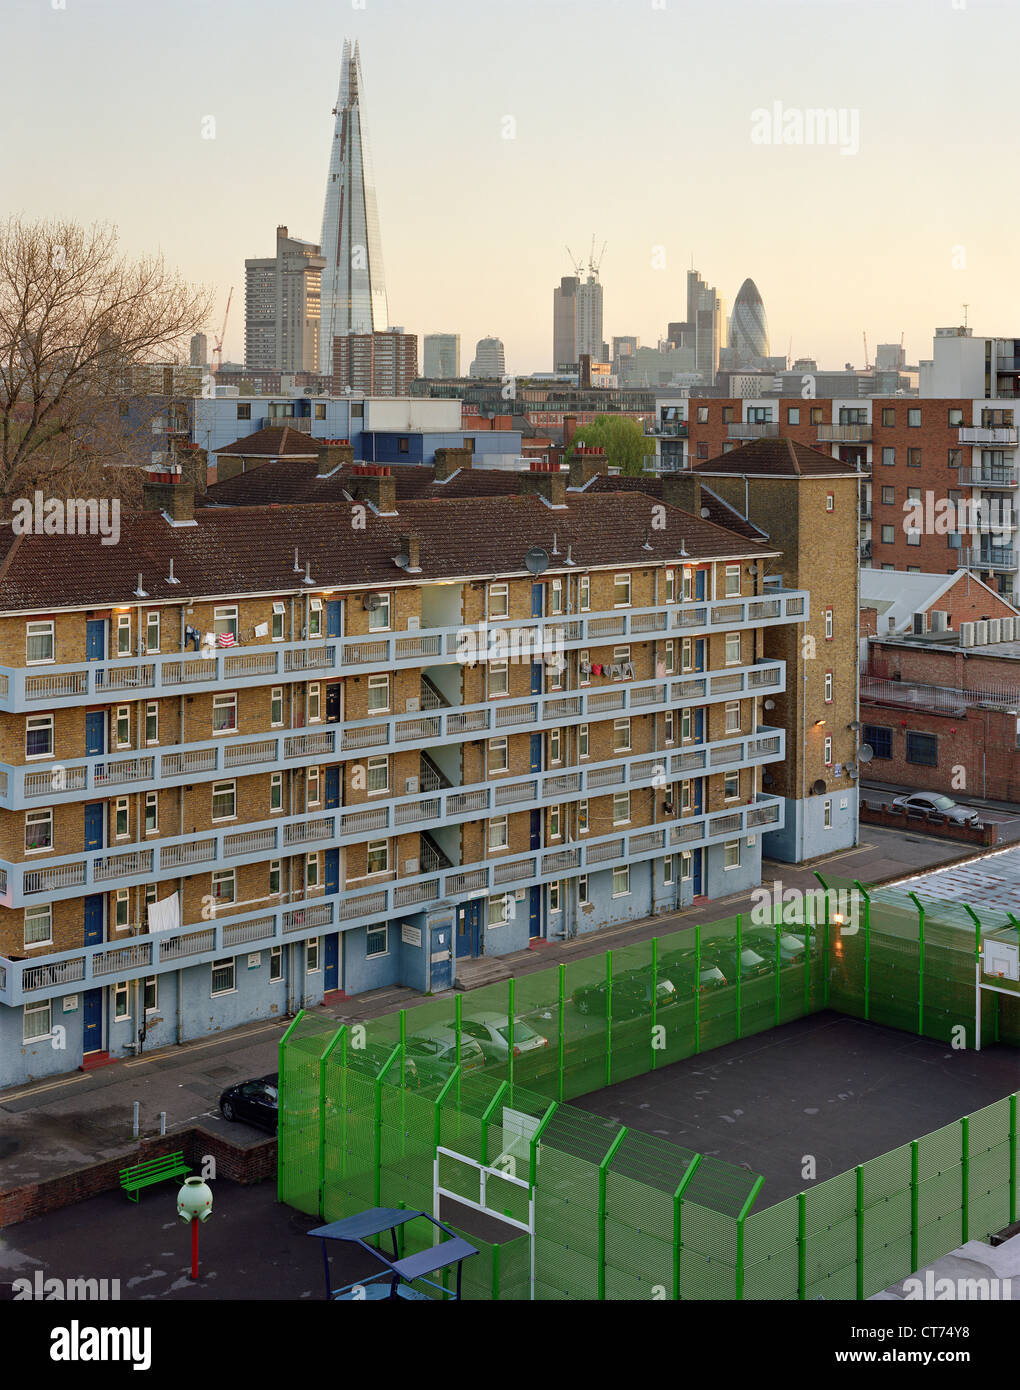 Shard, Londra, Regno Unito. Architetto: Renzo Piano Building Workshop, 2012. Mostra la scala e la qualità del materiale del Shard Foto Stock